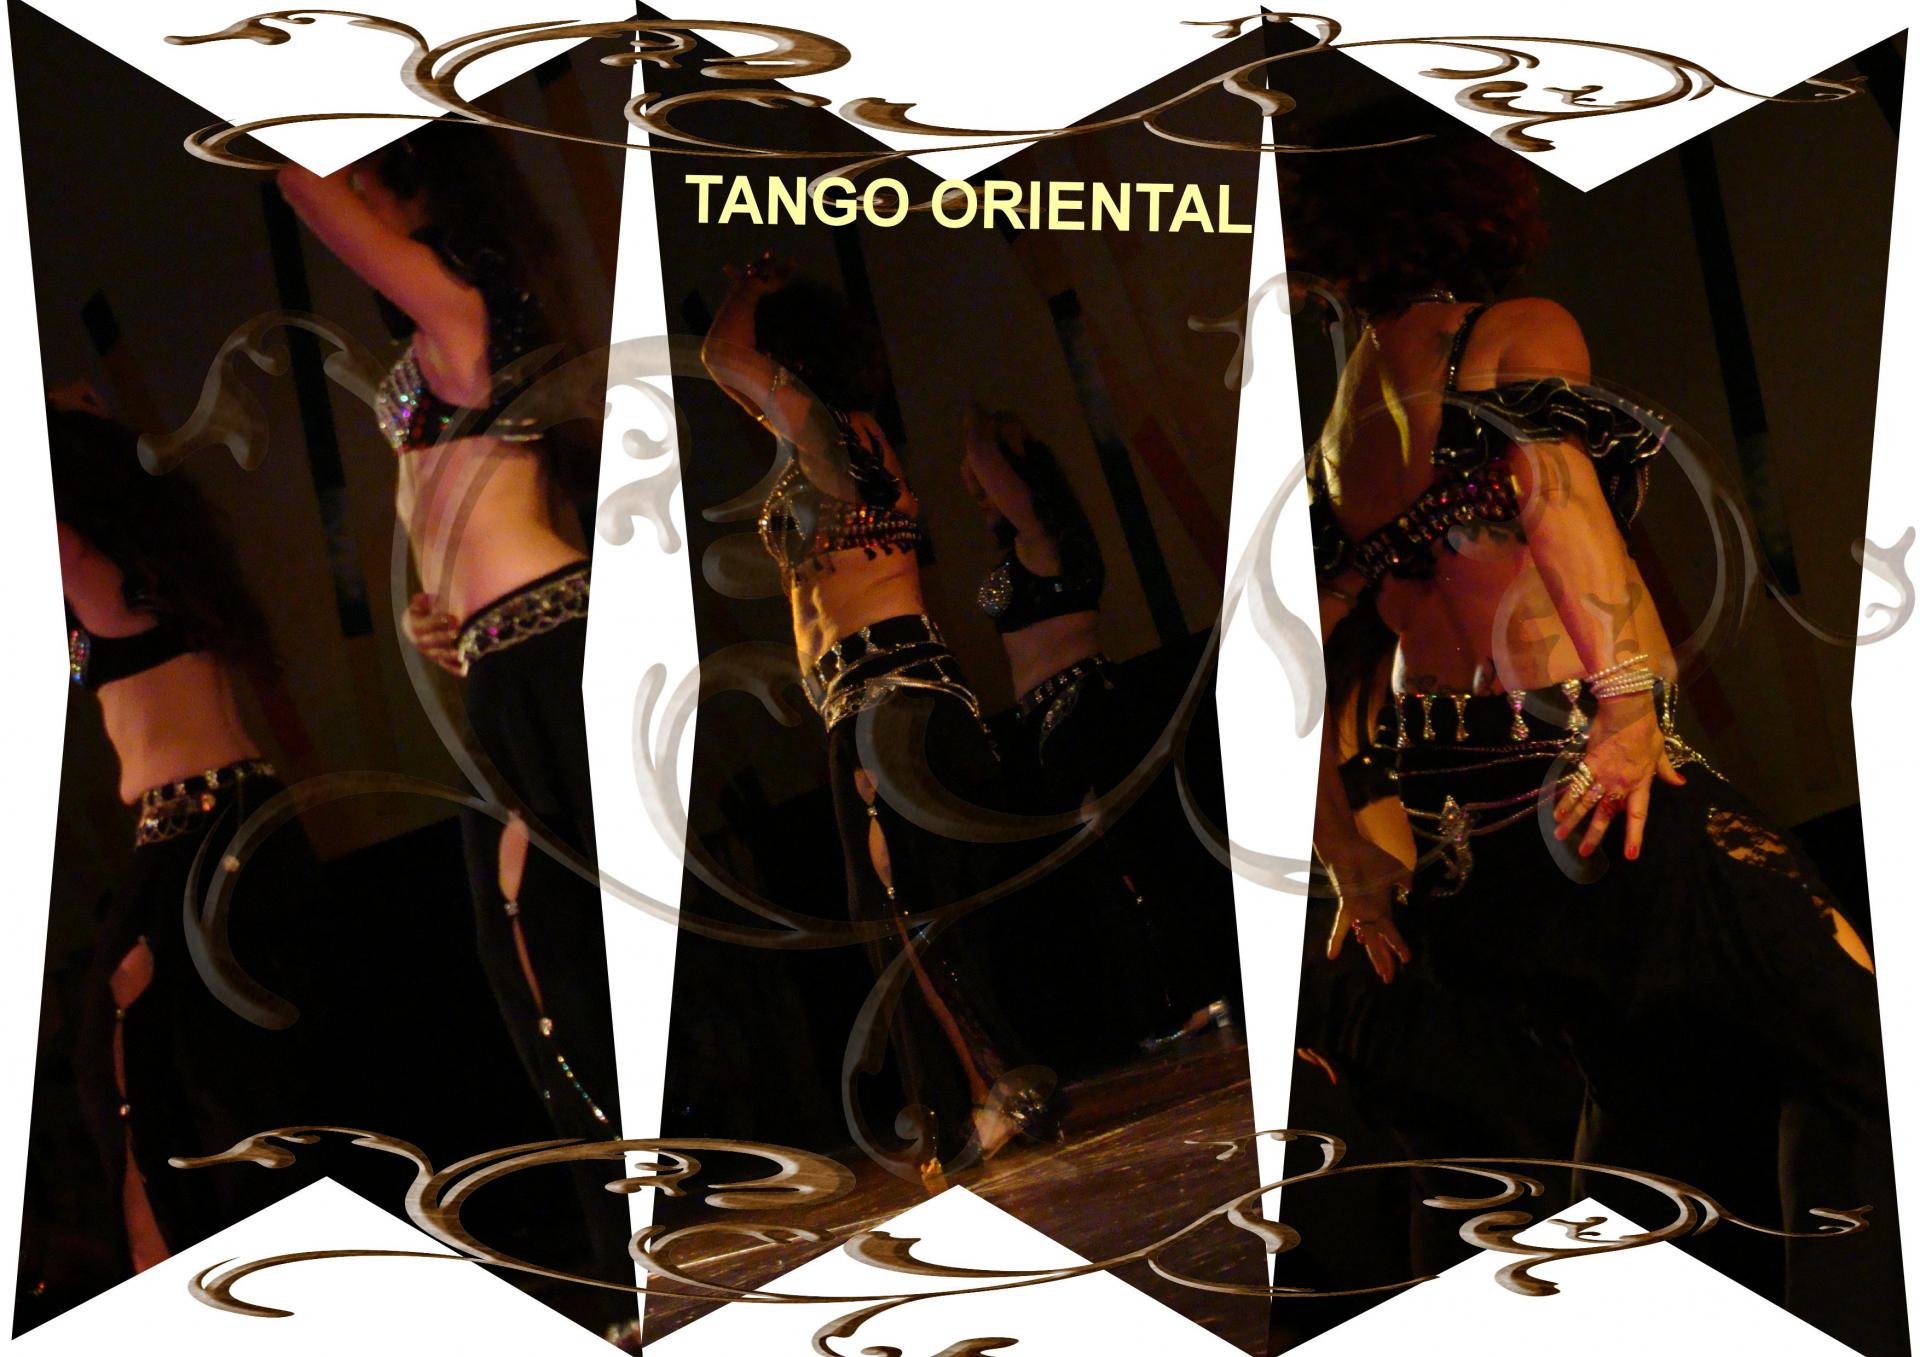 Tango oriental kopytko sheherazade